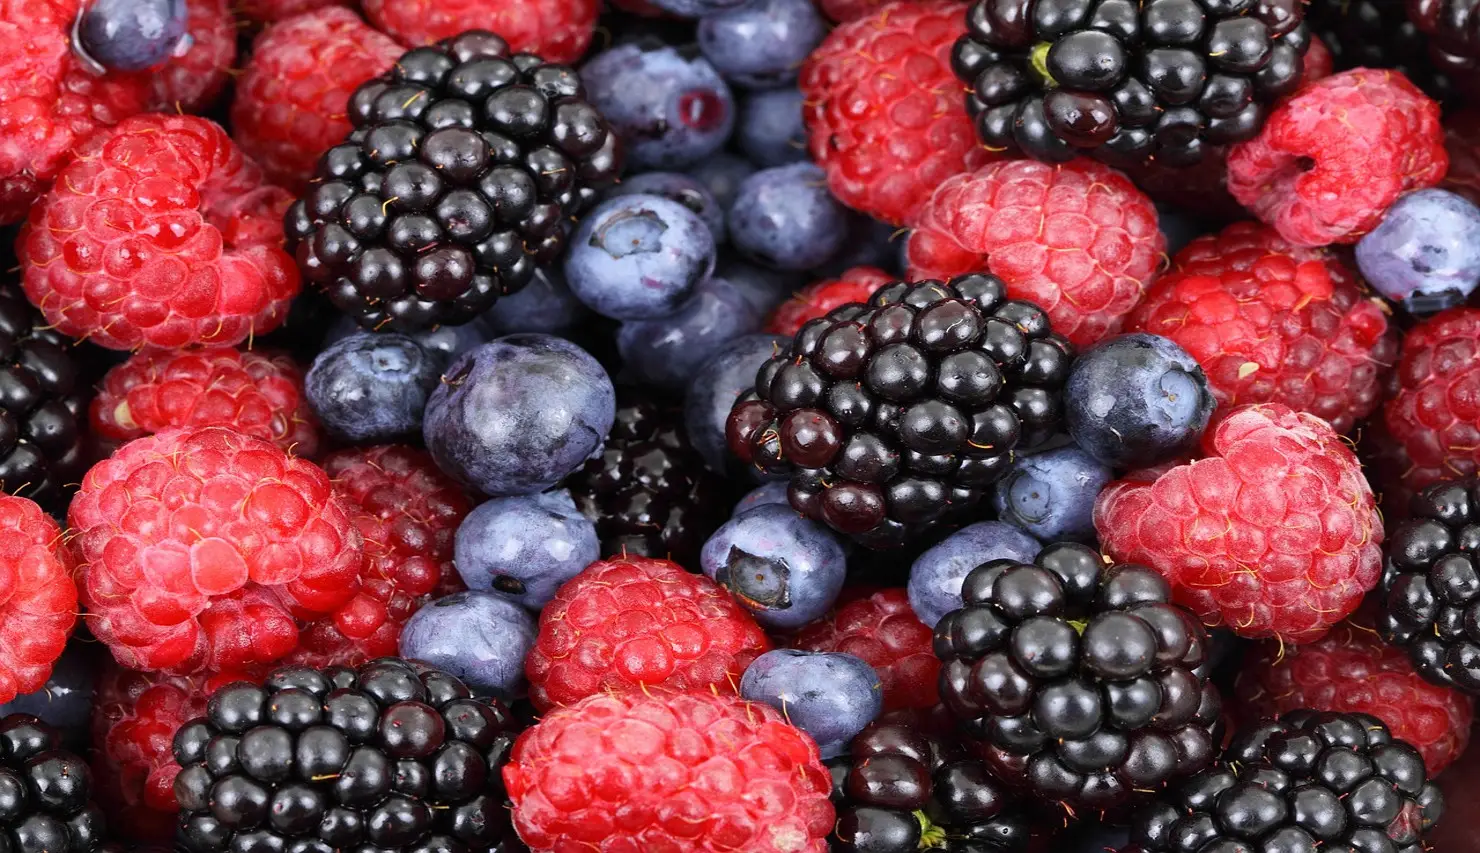 Lysine/Arginine Guide for Blueberries